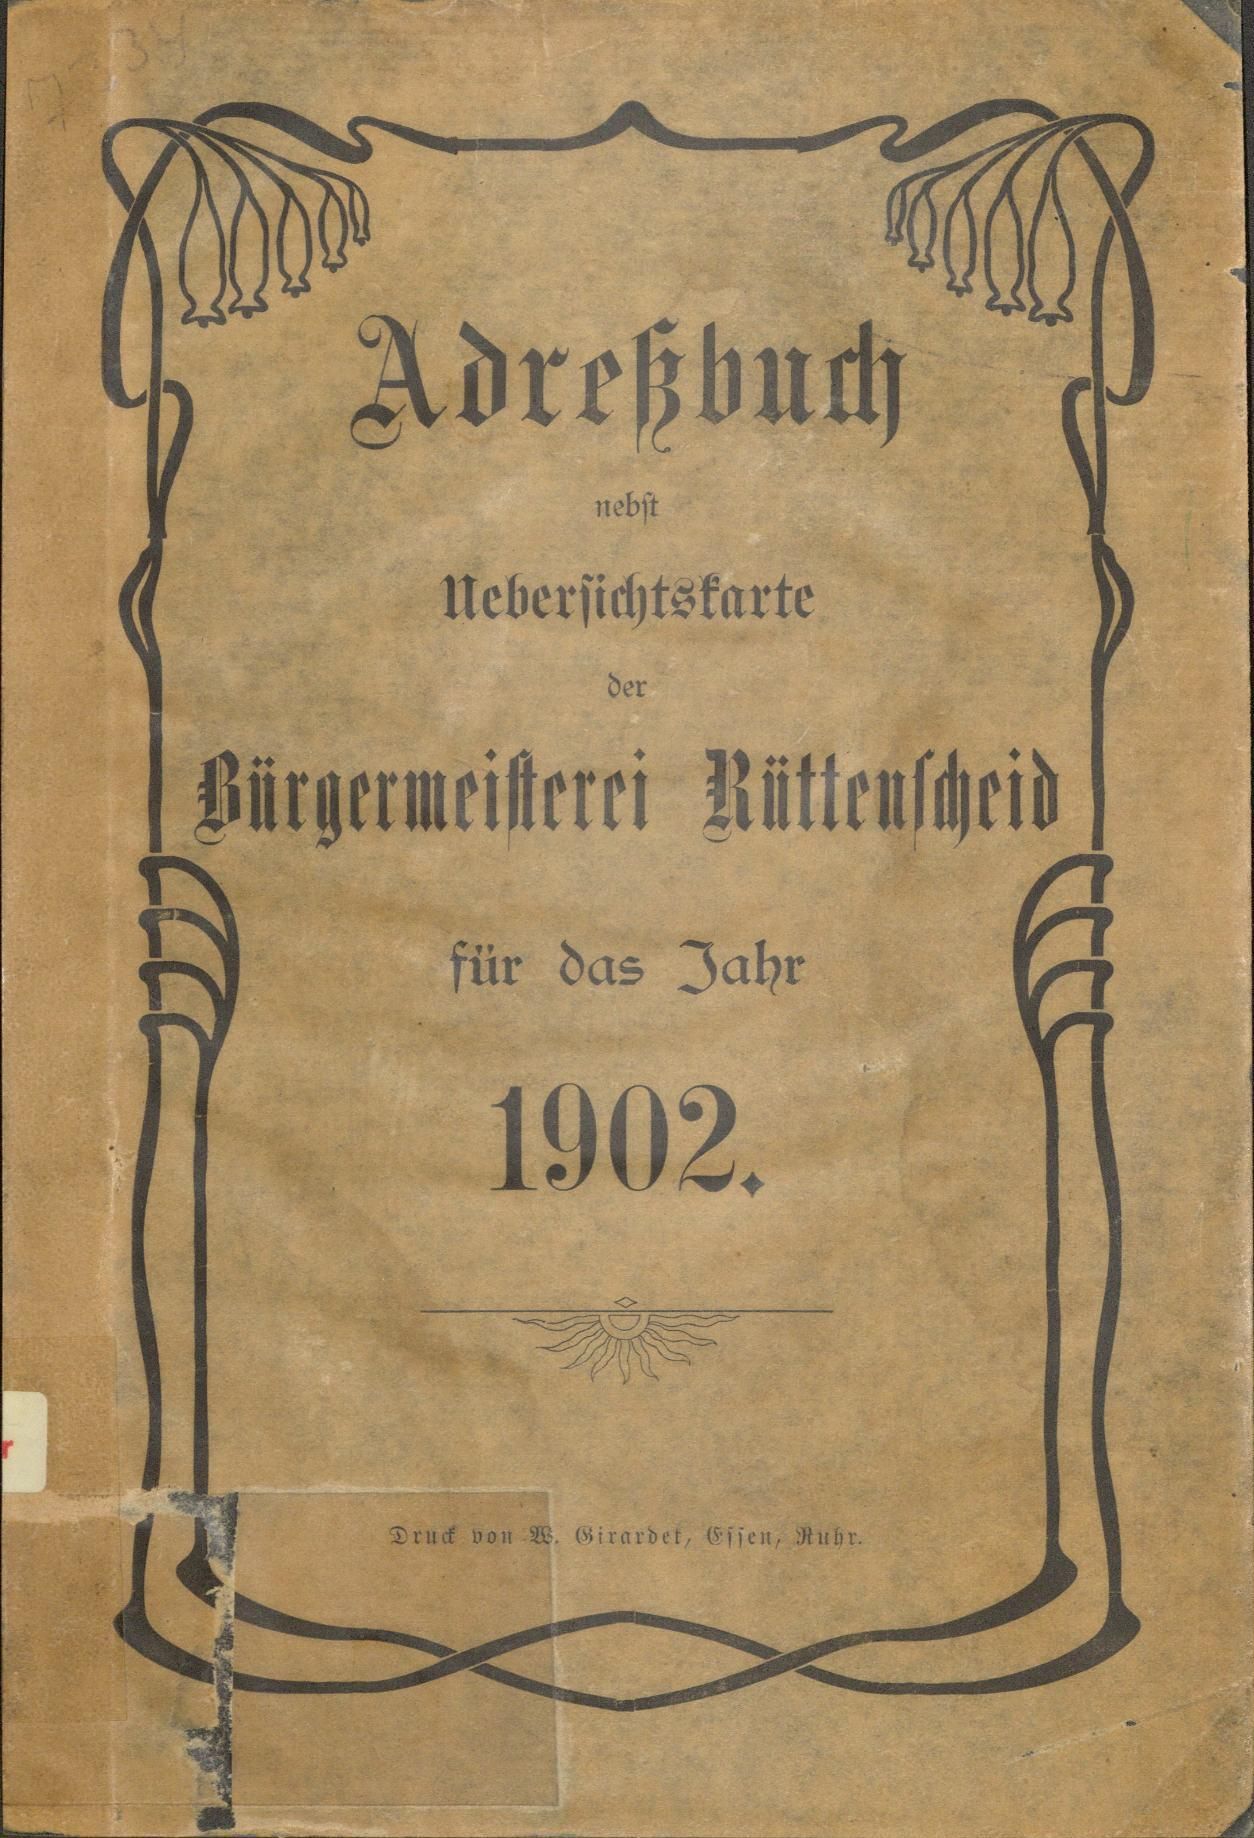 Adreßbuch der Bürgermeisterei Rüttenscheid für das Jahr 1902